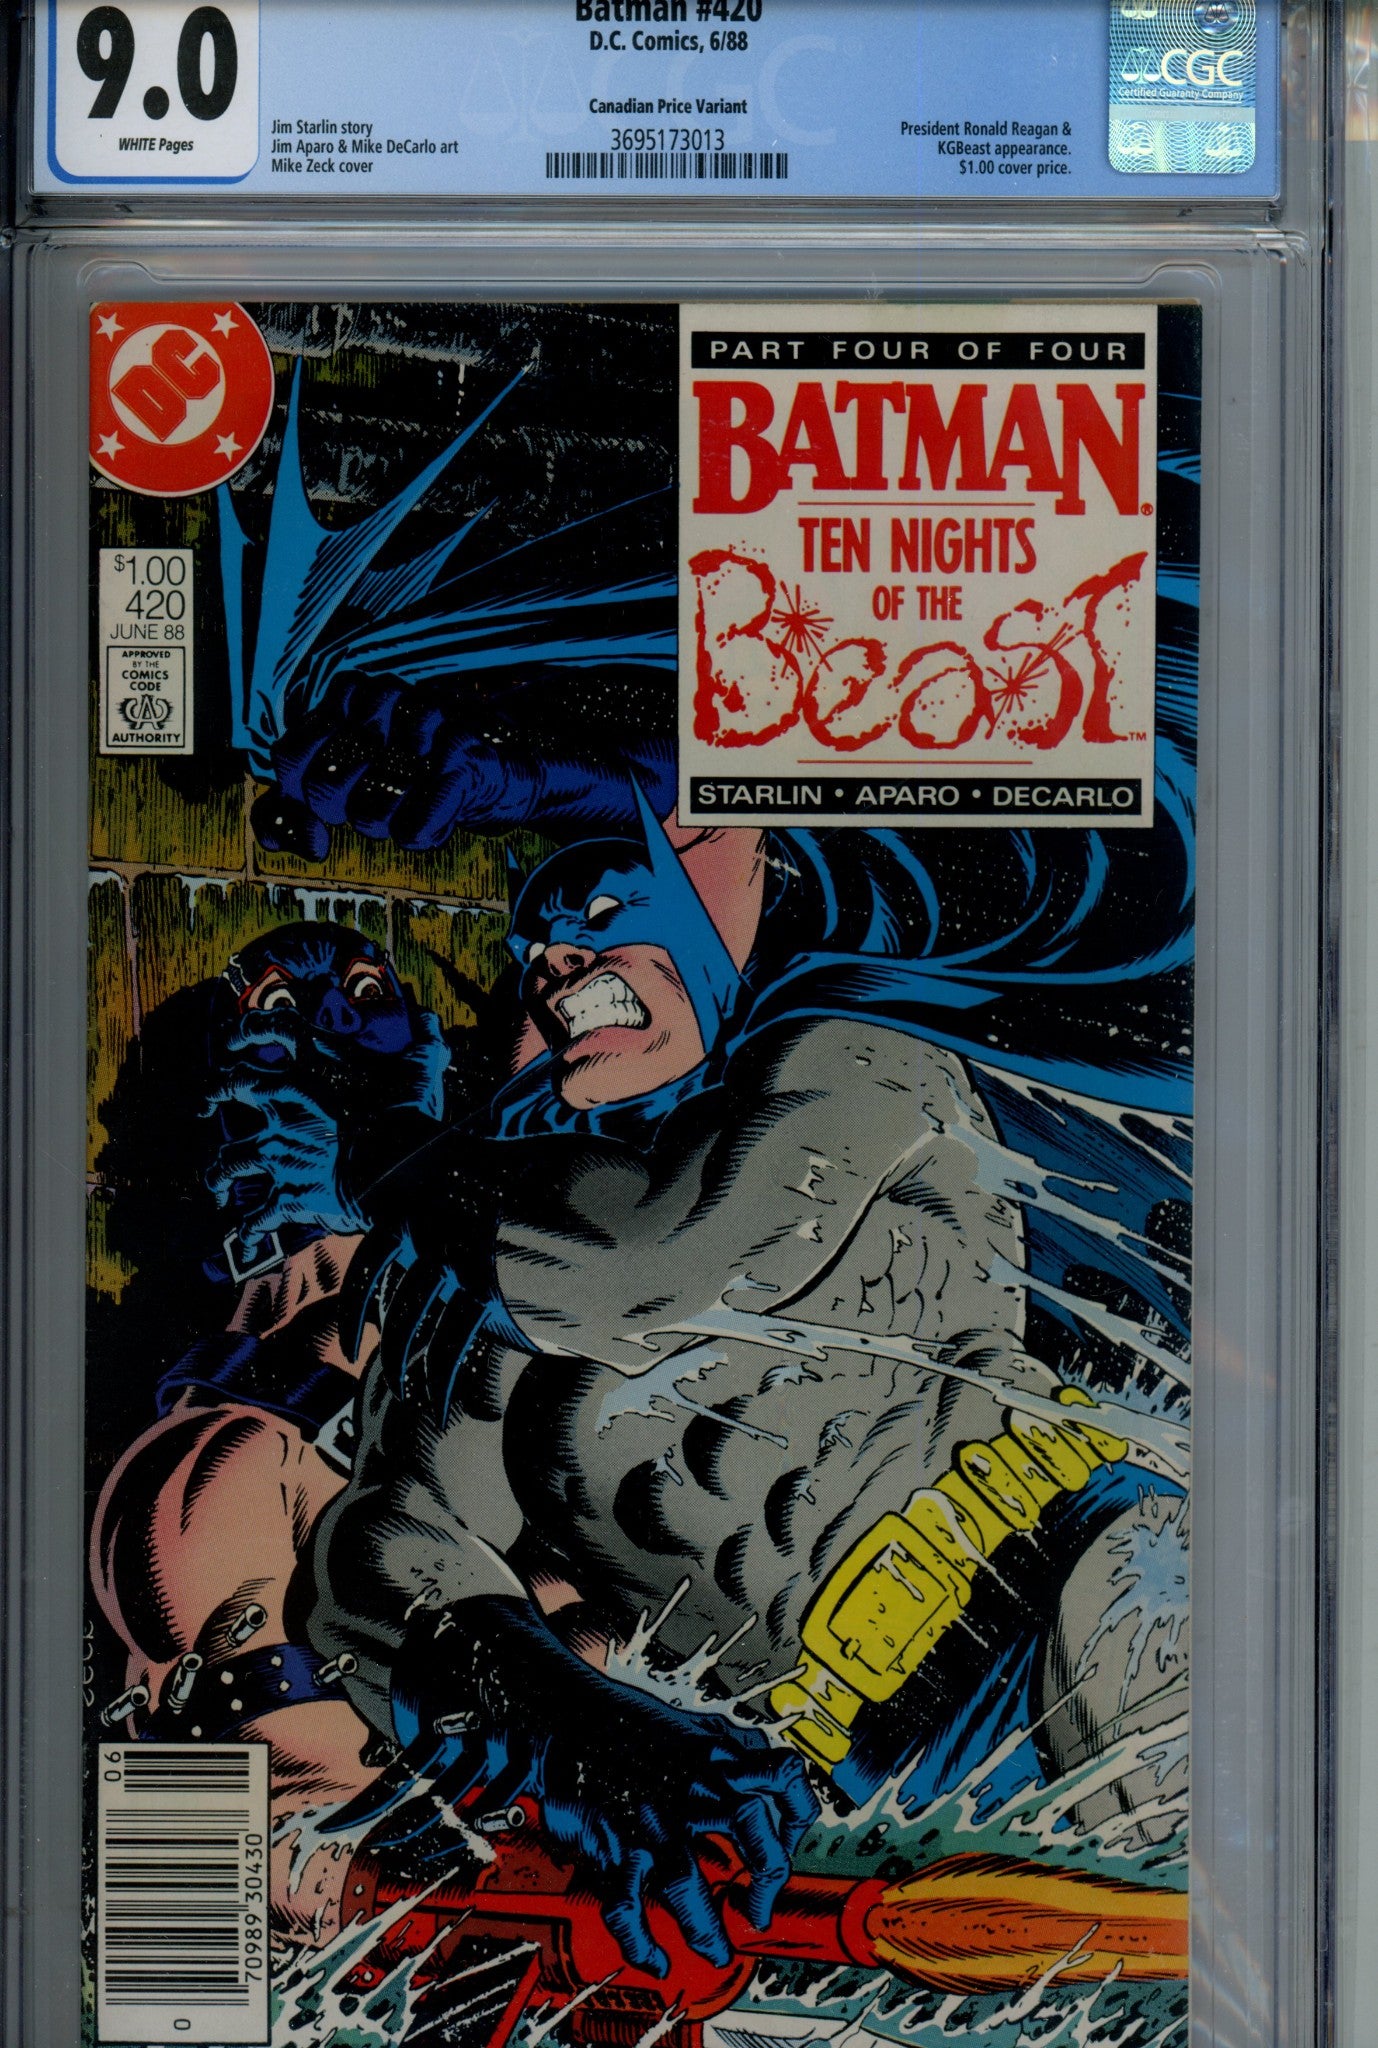 Batman Vol 1 420 CGC 9.0 (1988)